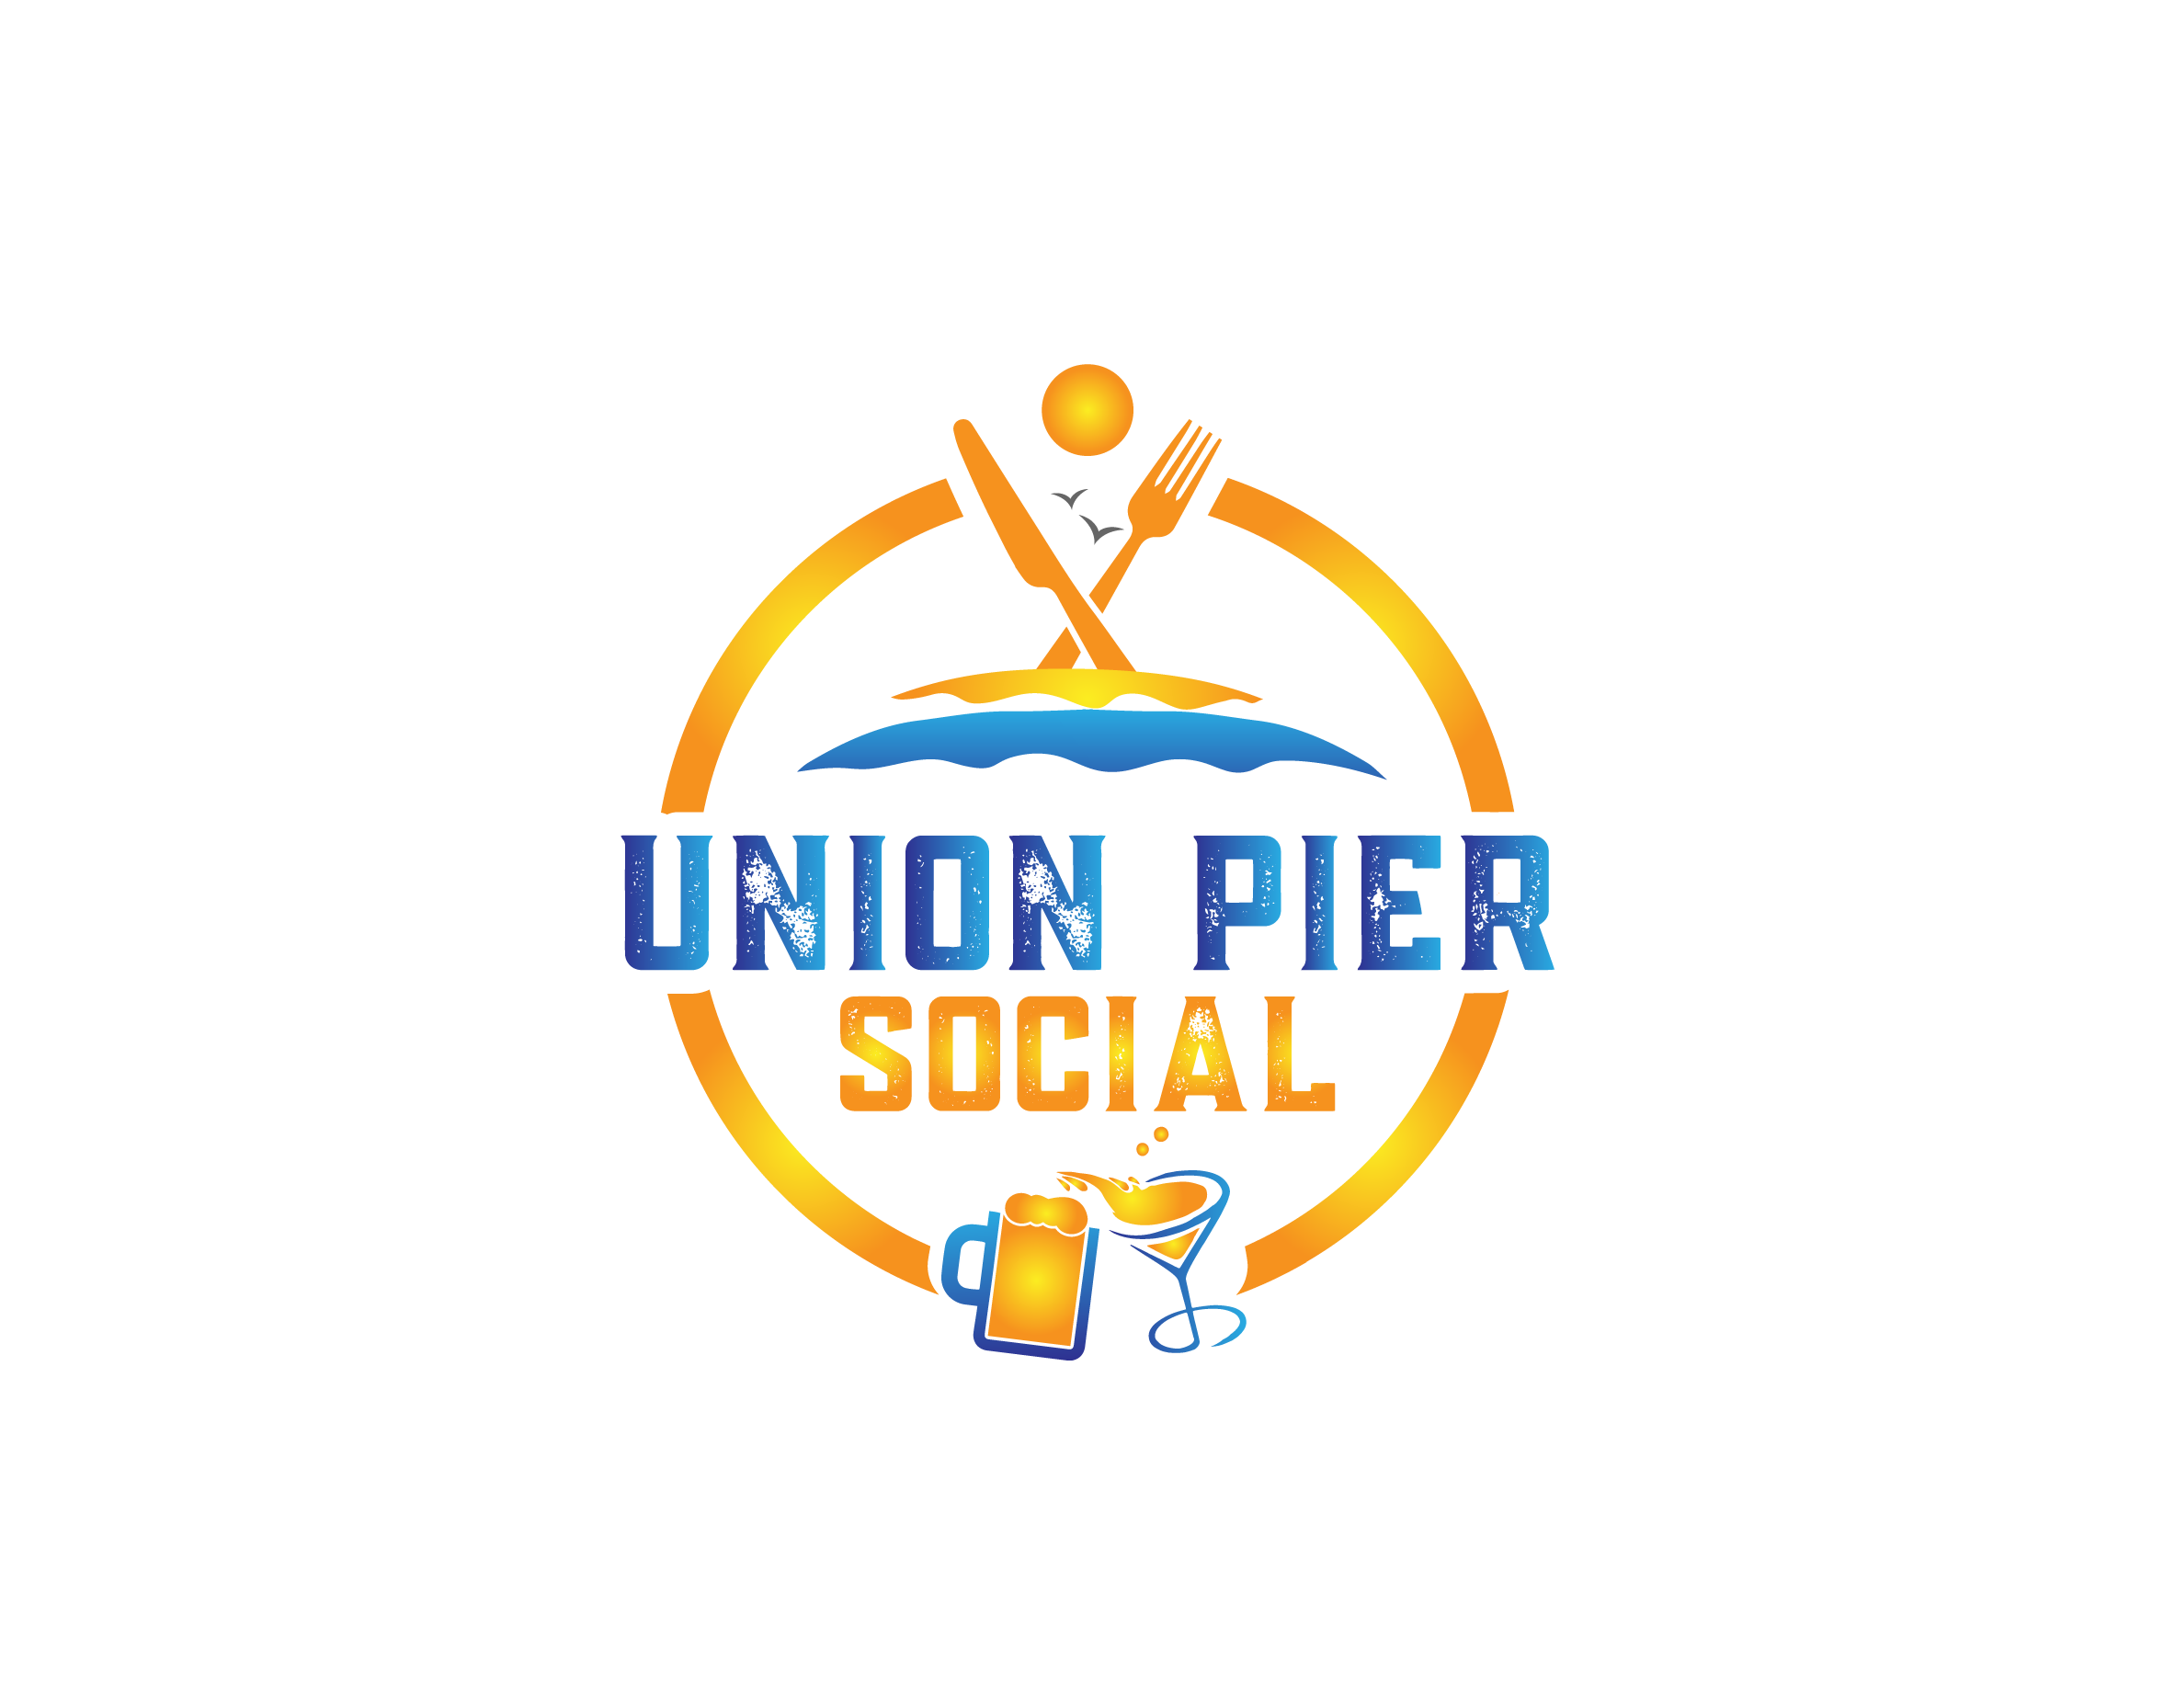 Union Pier Social